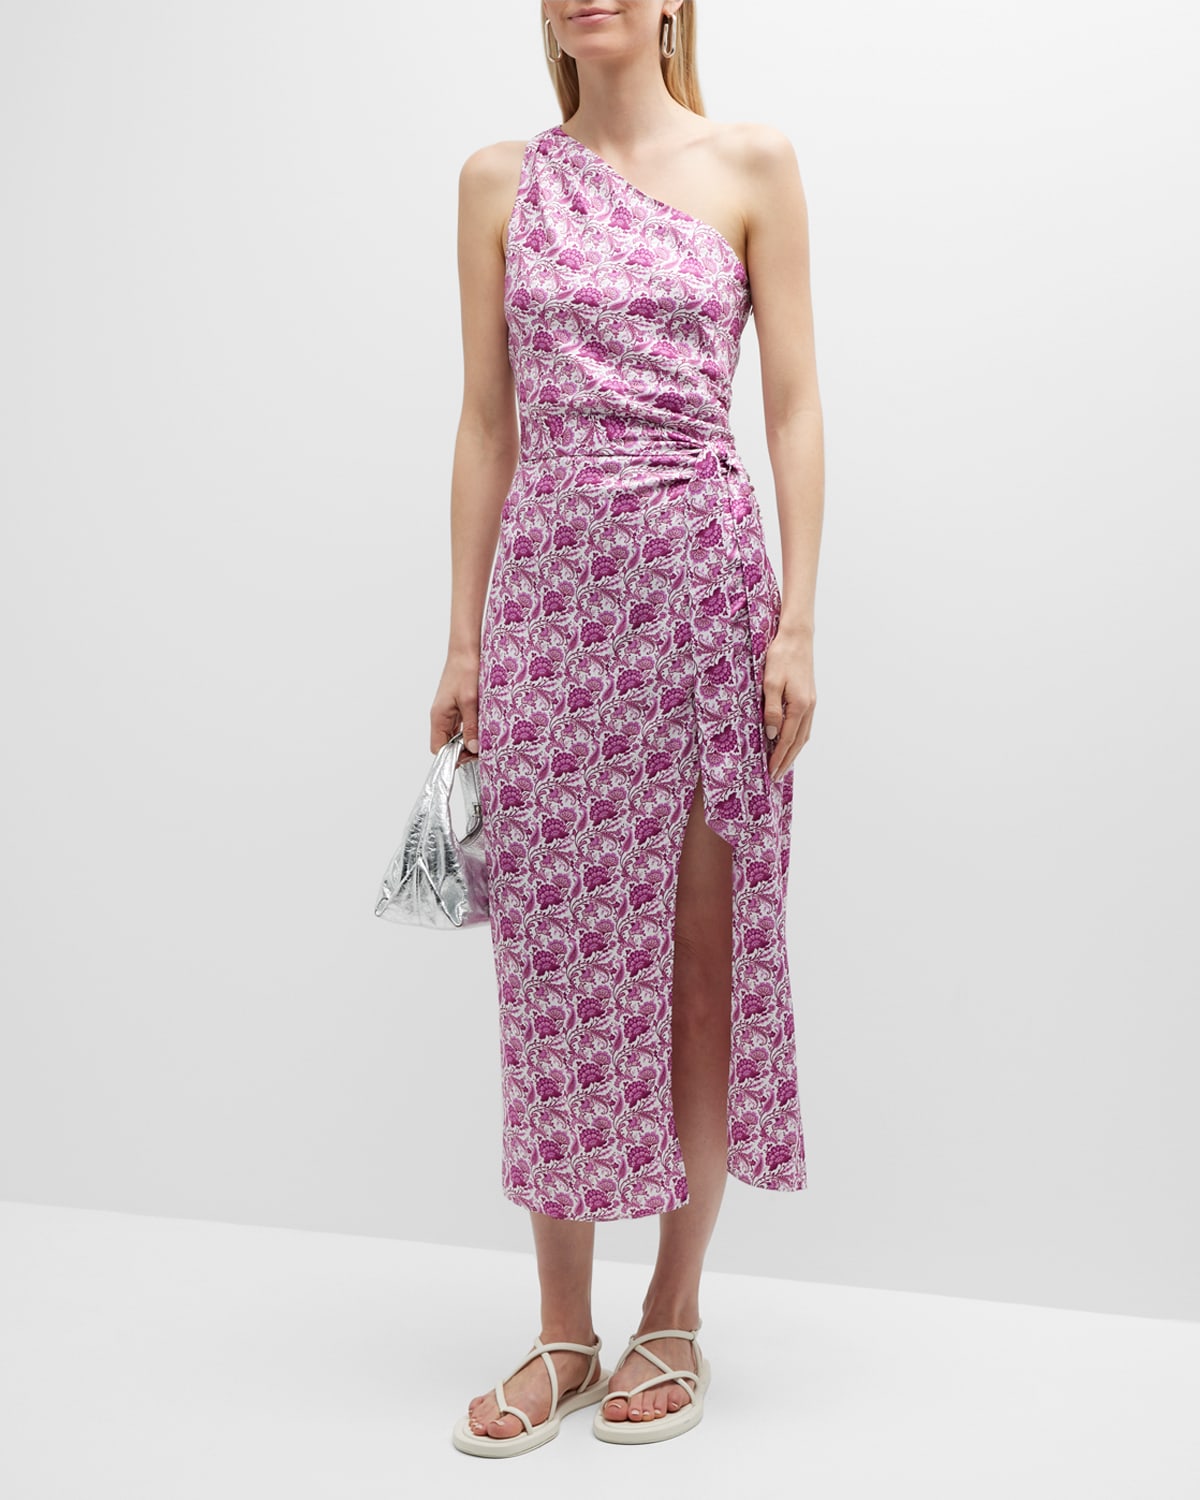 Nanu One-Shoulder Faux-Wrap Midi Dress